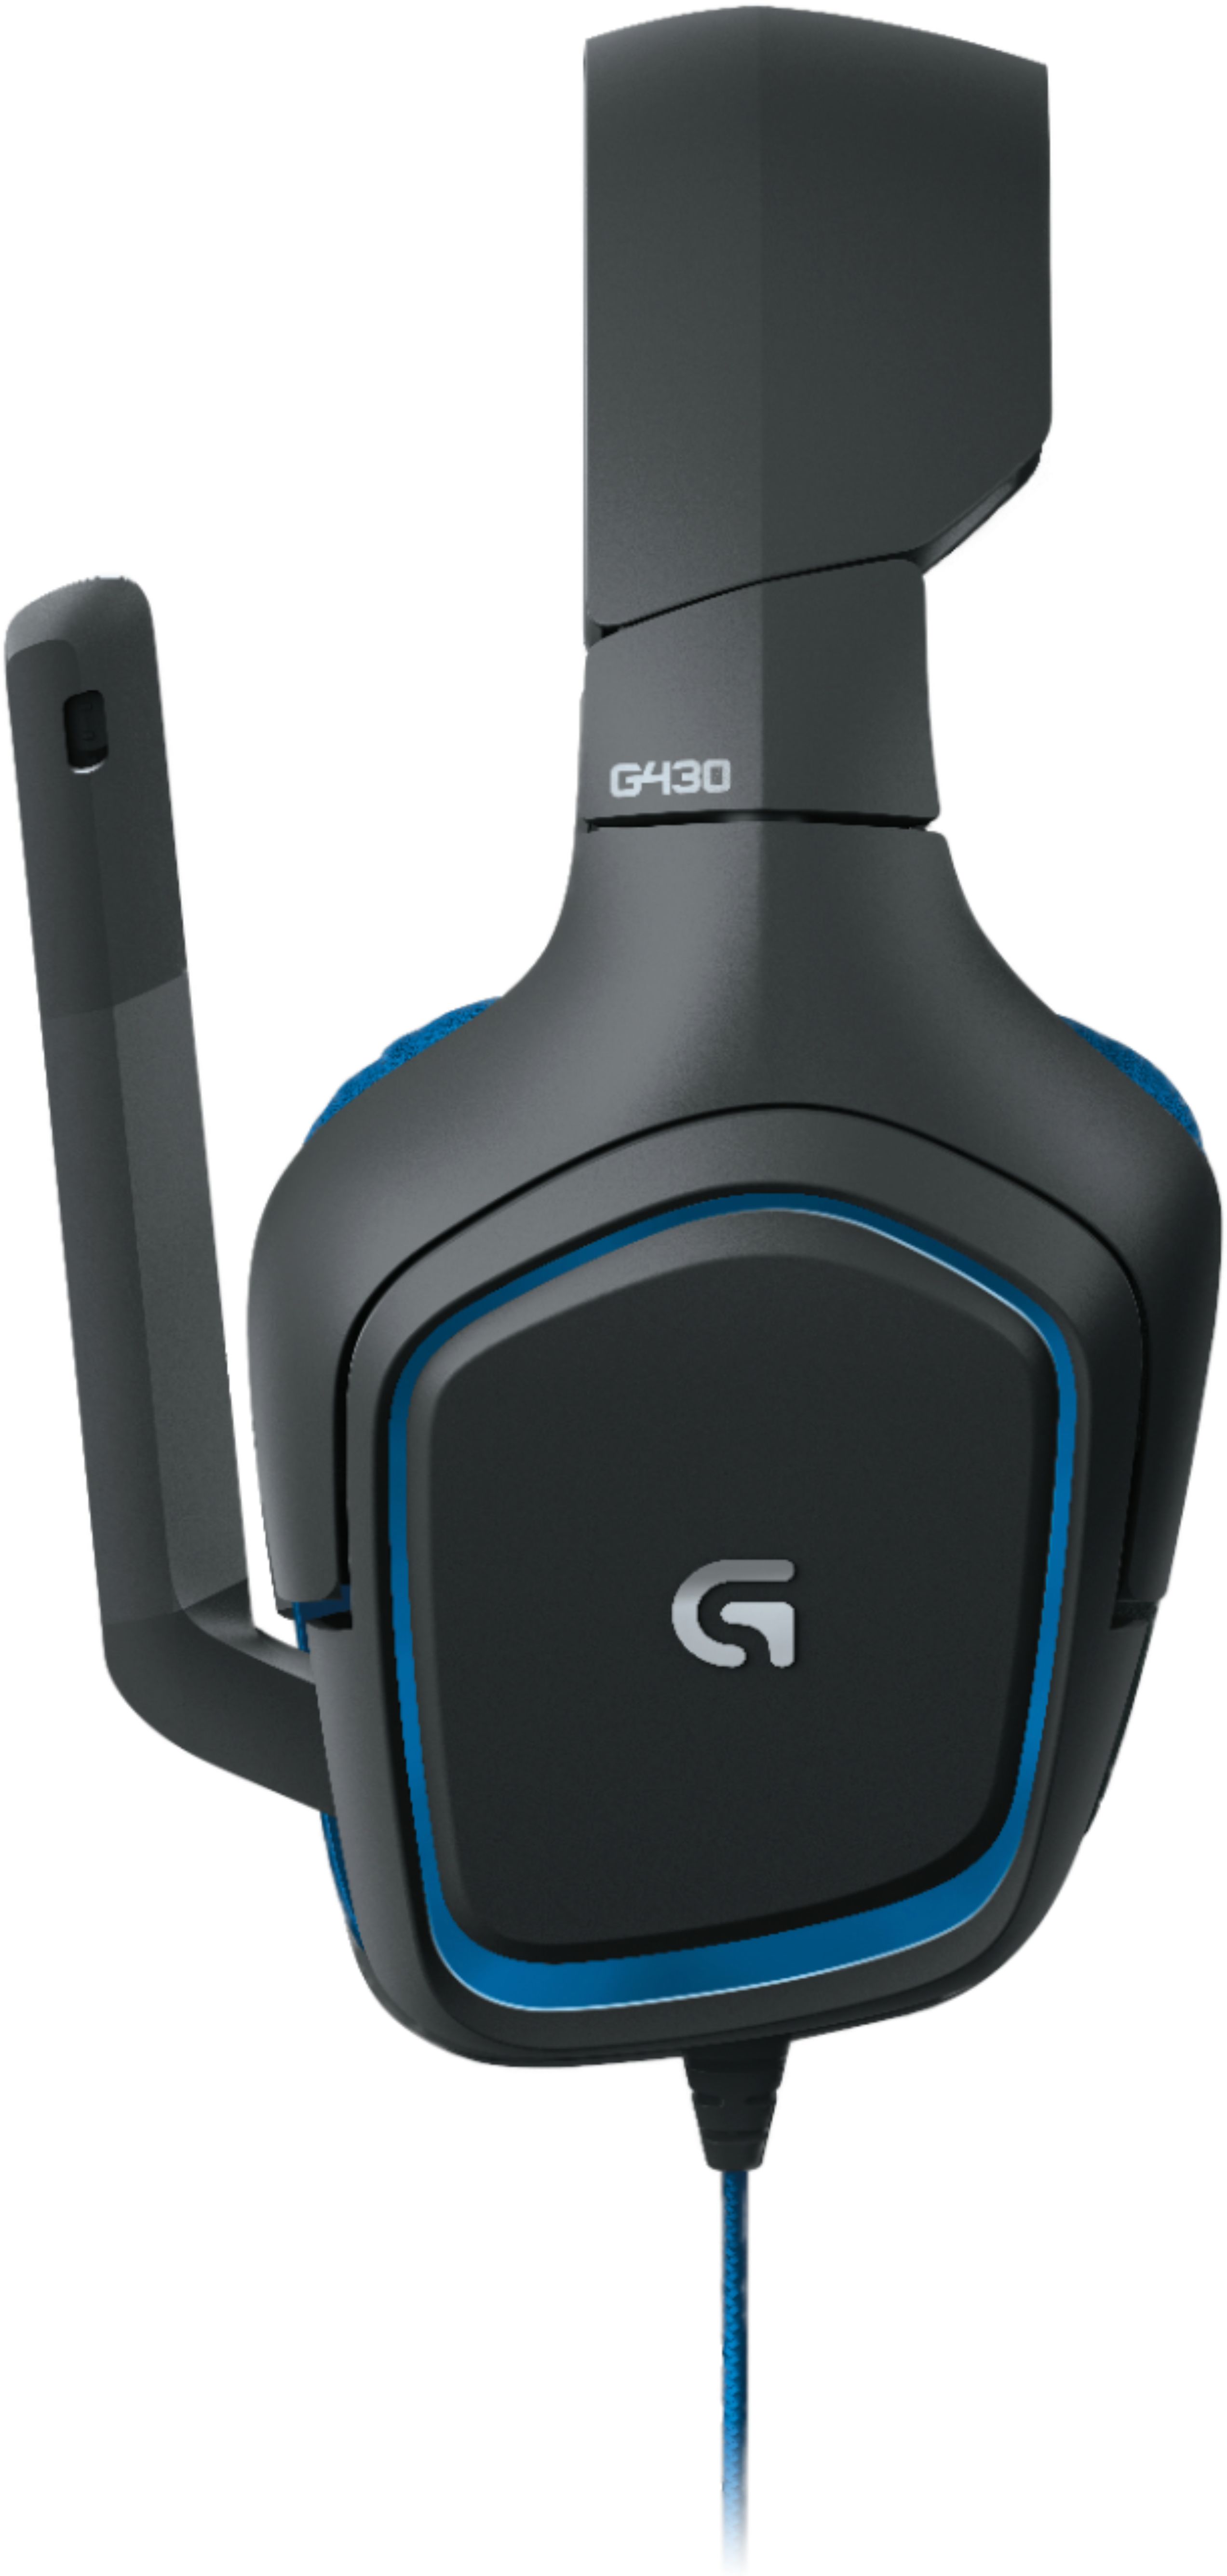 Logitech G430 Over The Ear Gaming Headset Black 981 Best Buy